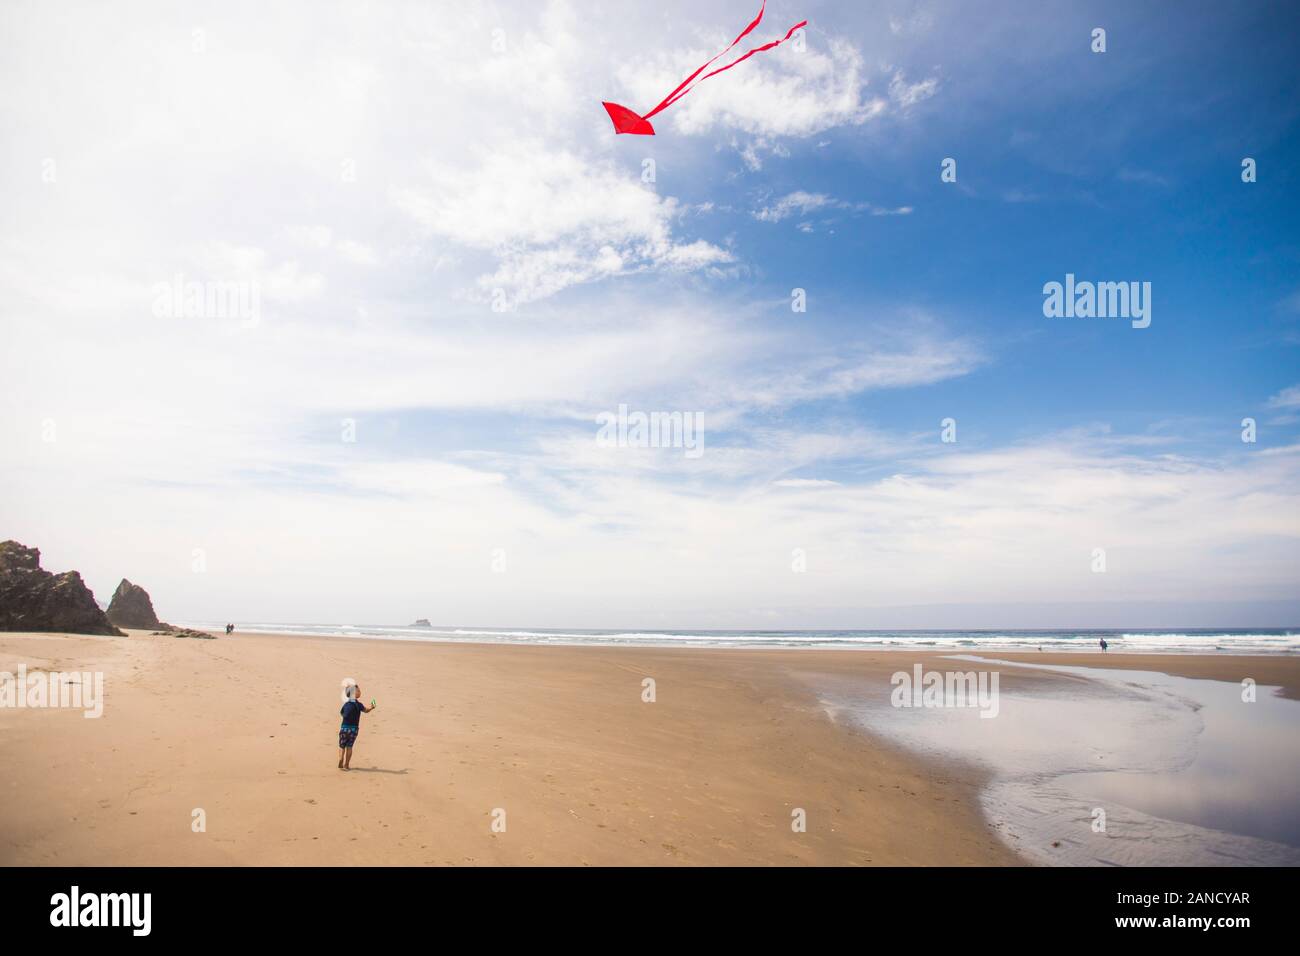 Un petit garçon vole un cerf-volant sur la plage Banque D'Images